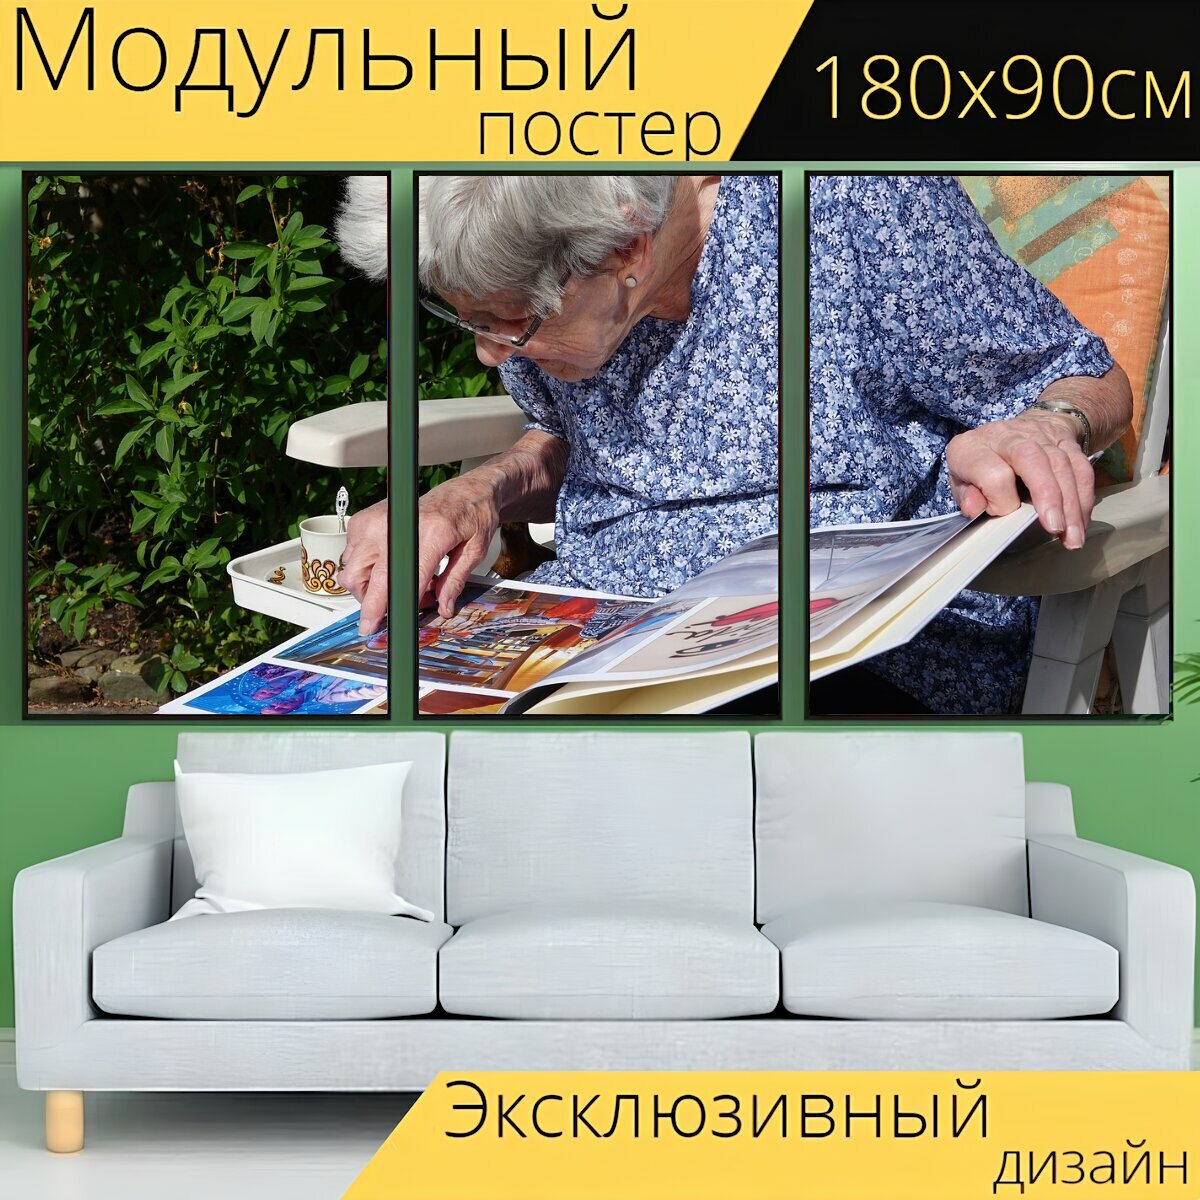 Модульный постер "Фотоальбом, бабушка, счастливый" 180 x 90 см. для интерьера